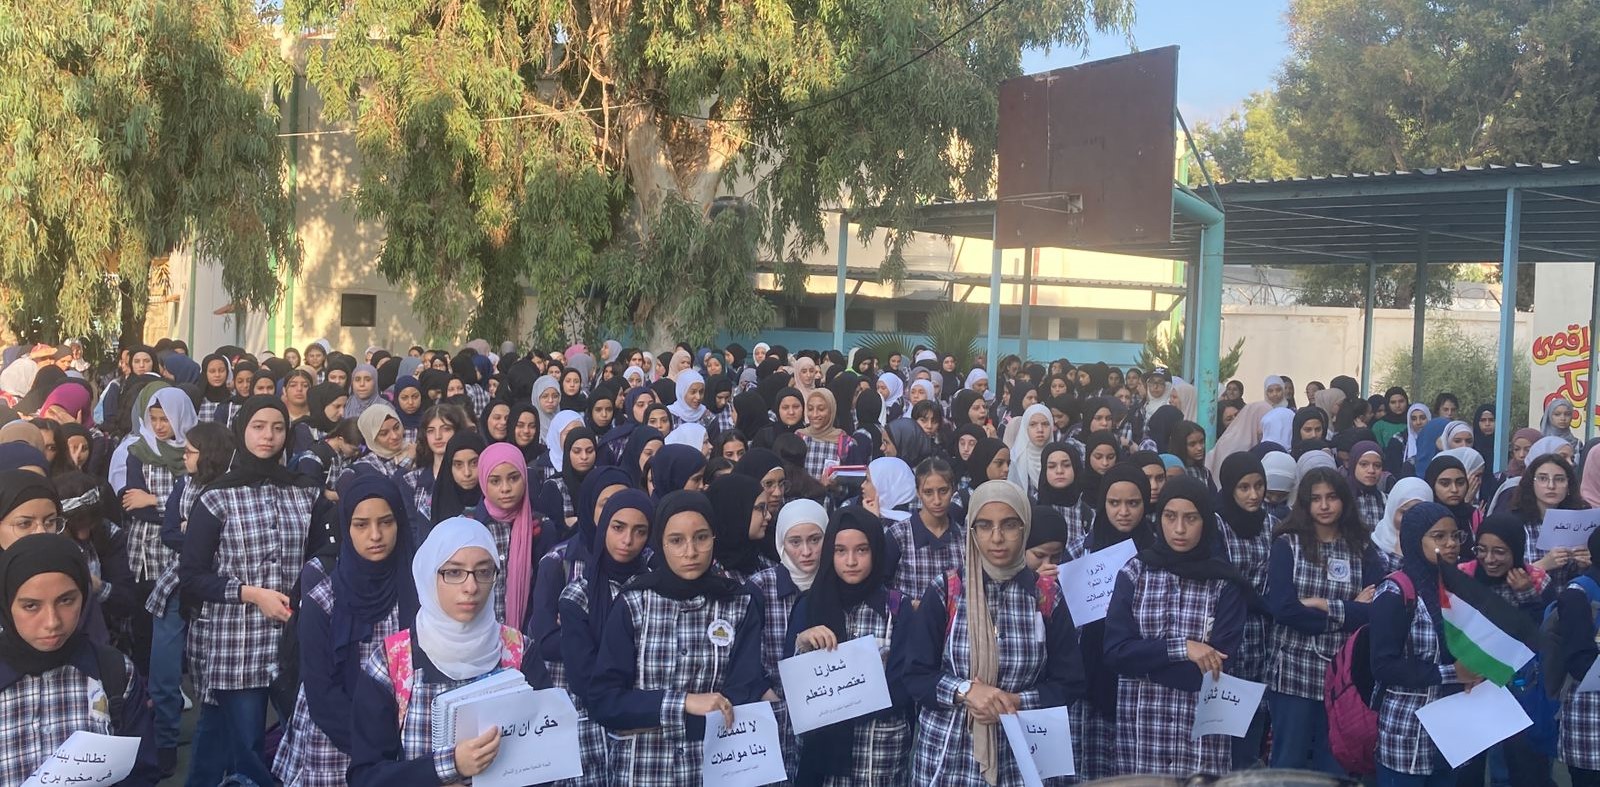 اعتصام لأهالي طلاب مخيم برج الشمالي في ثانوية الأقصى في الرشيدية للمطالبة بثانوية لهم